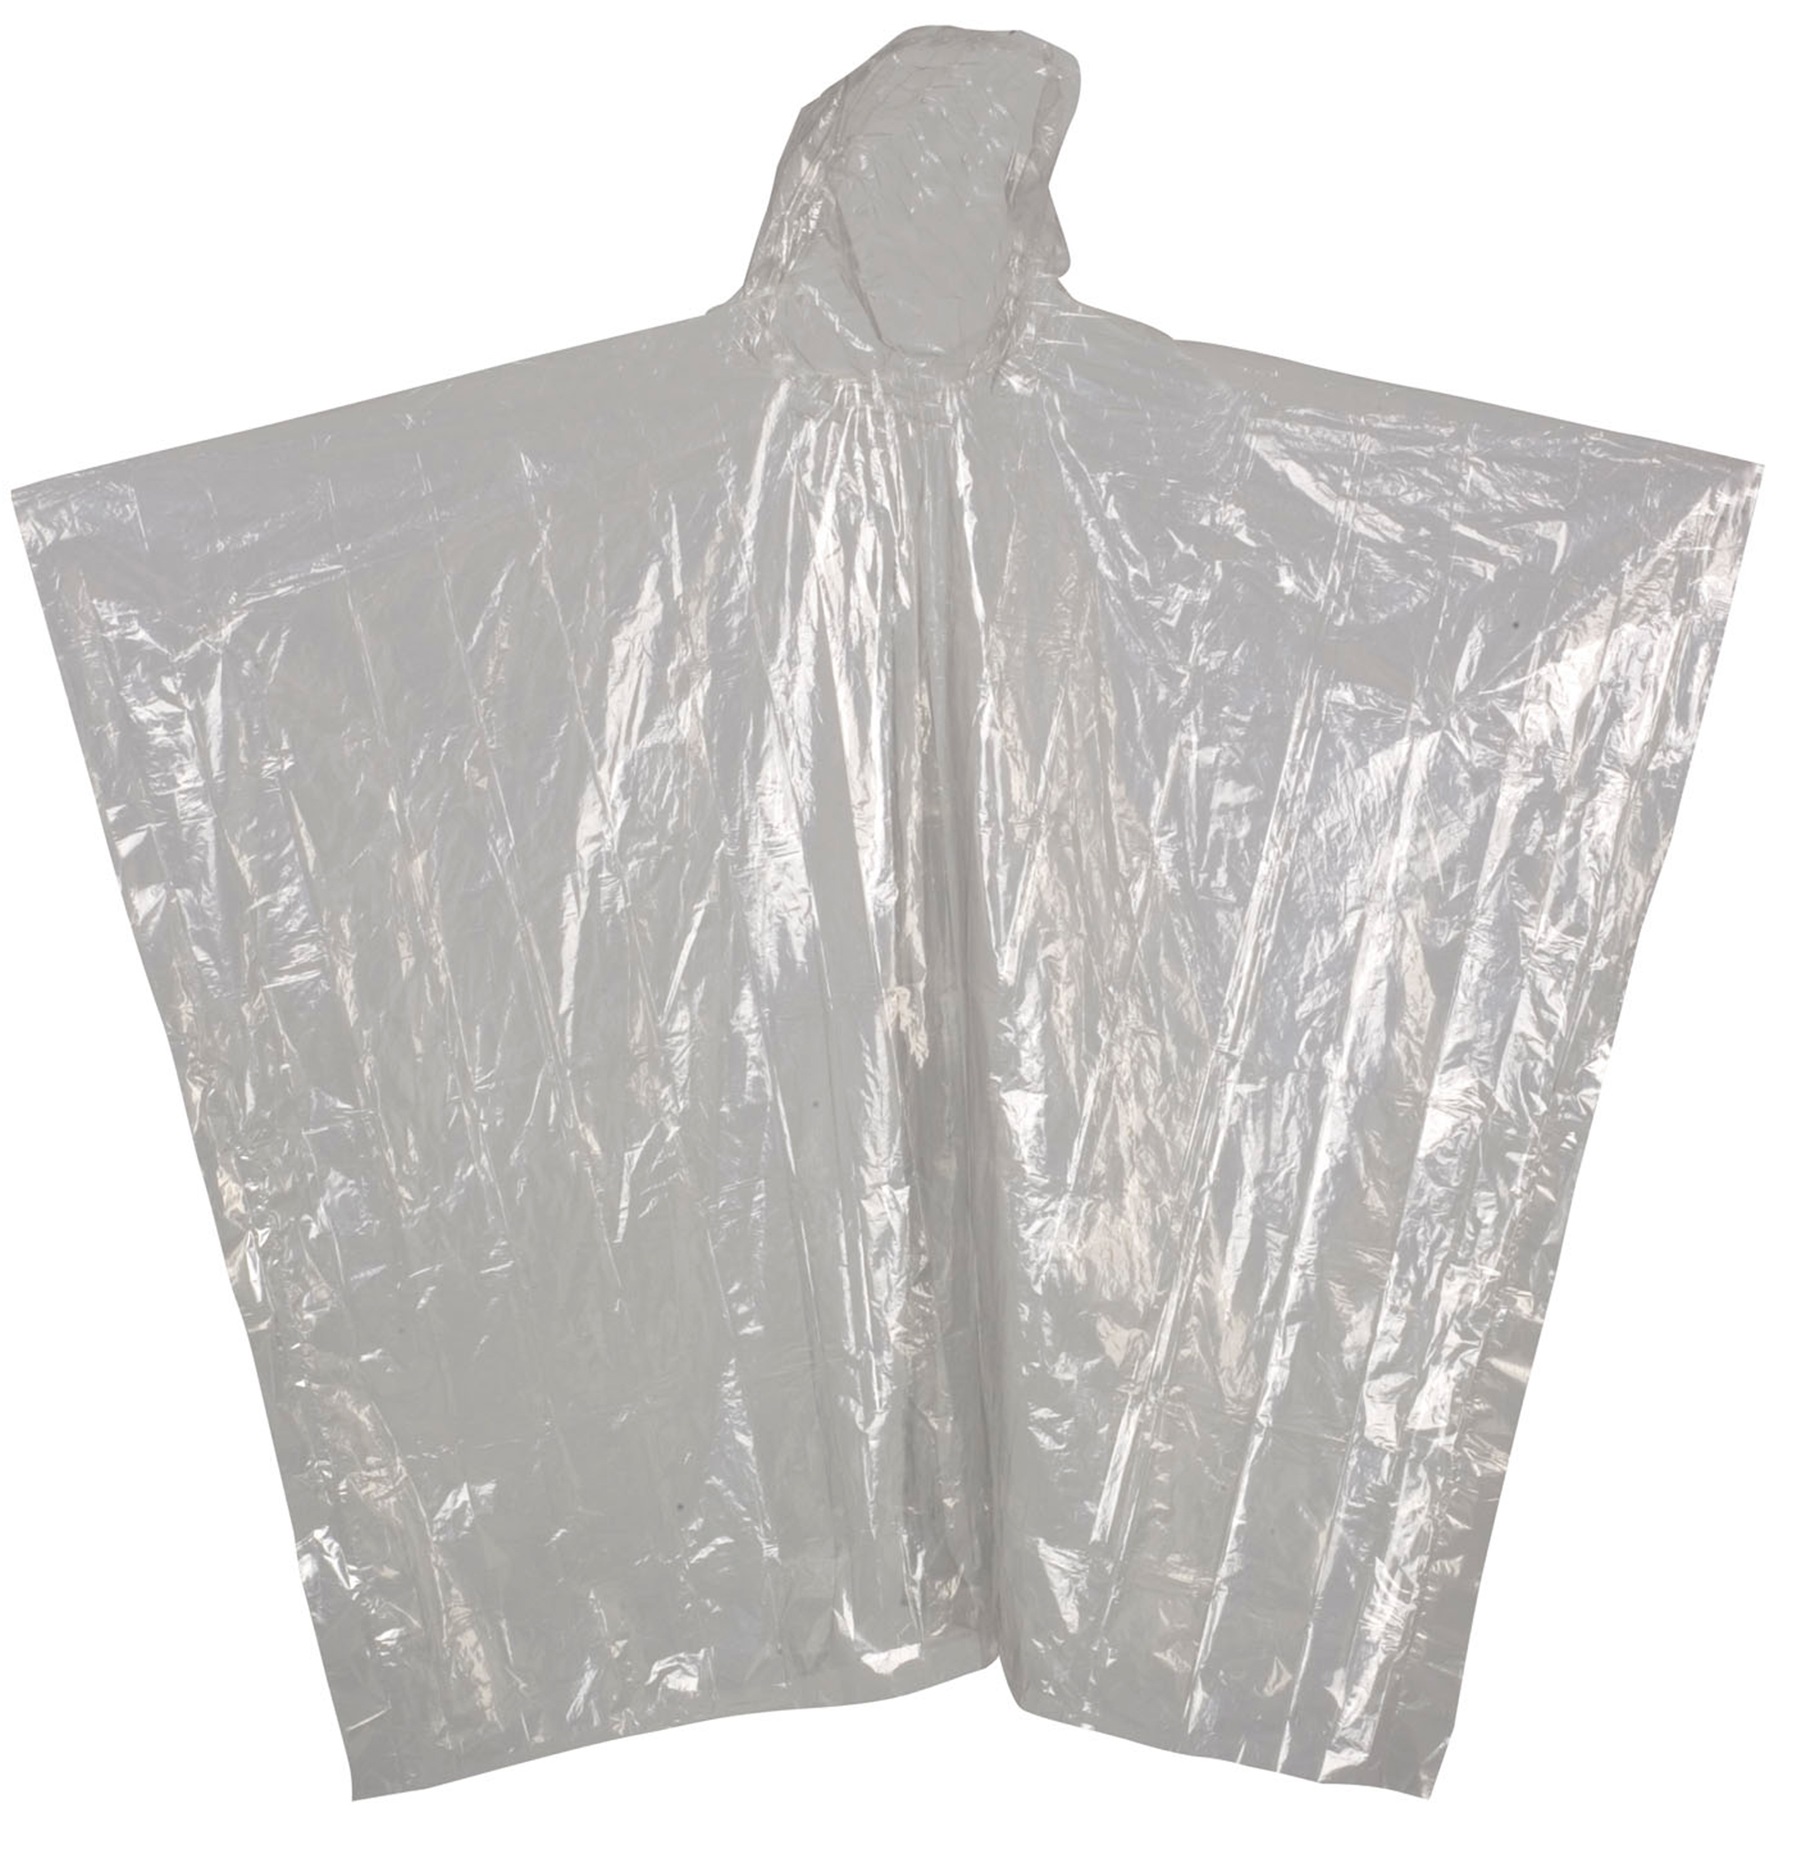 ELKA-Regenschutz, -Regen-Nässe-Wetter-Schutz-Haube, transparent